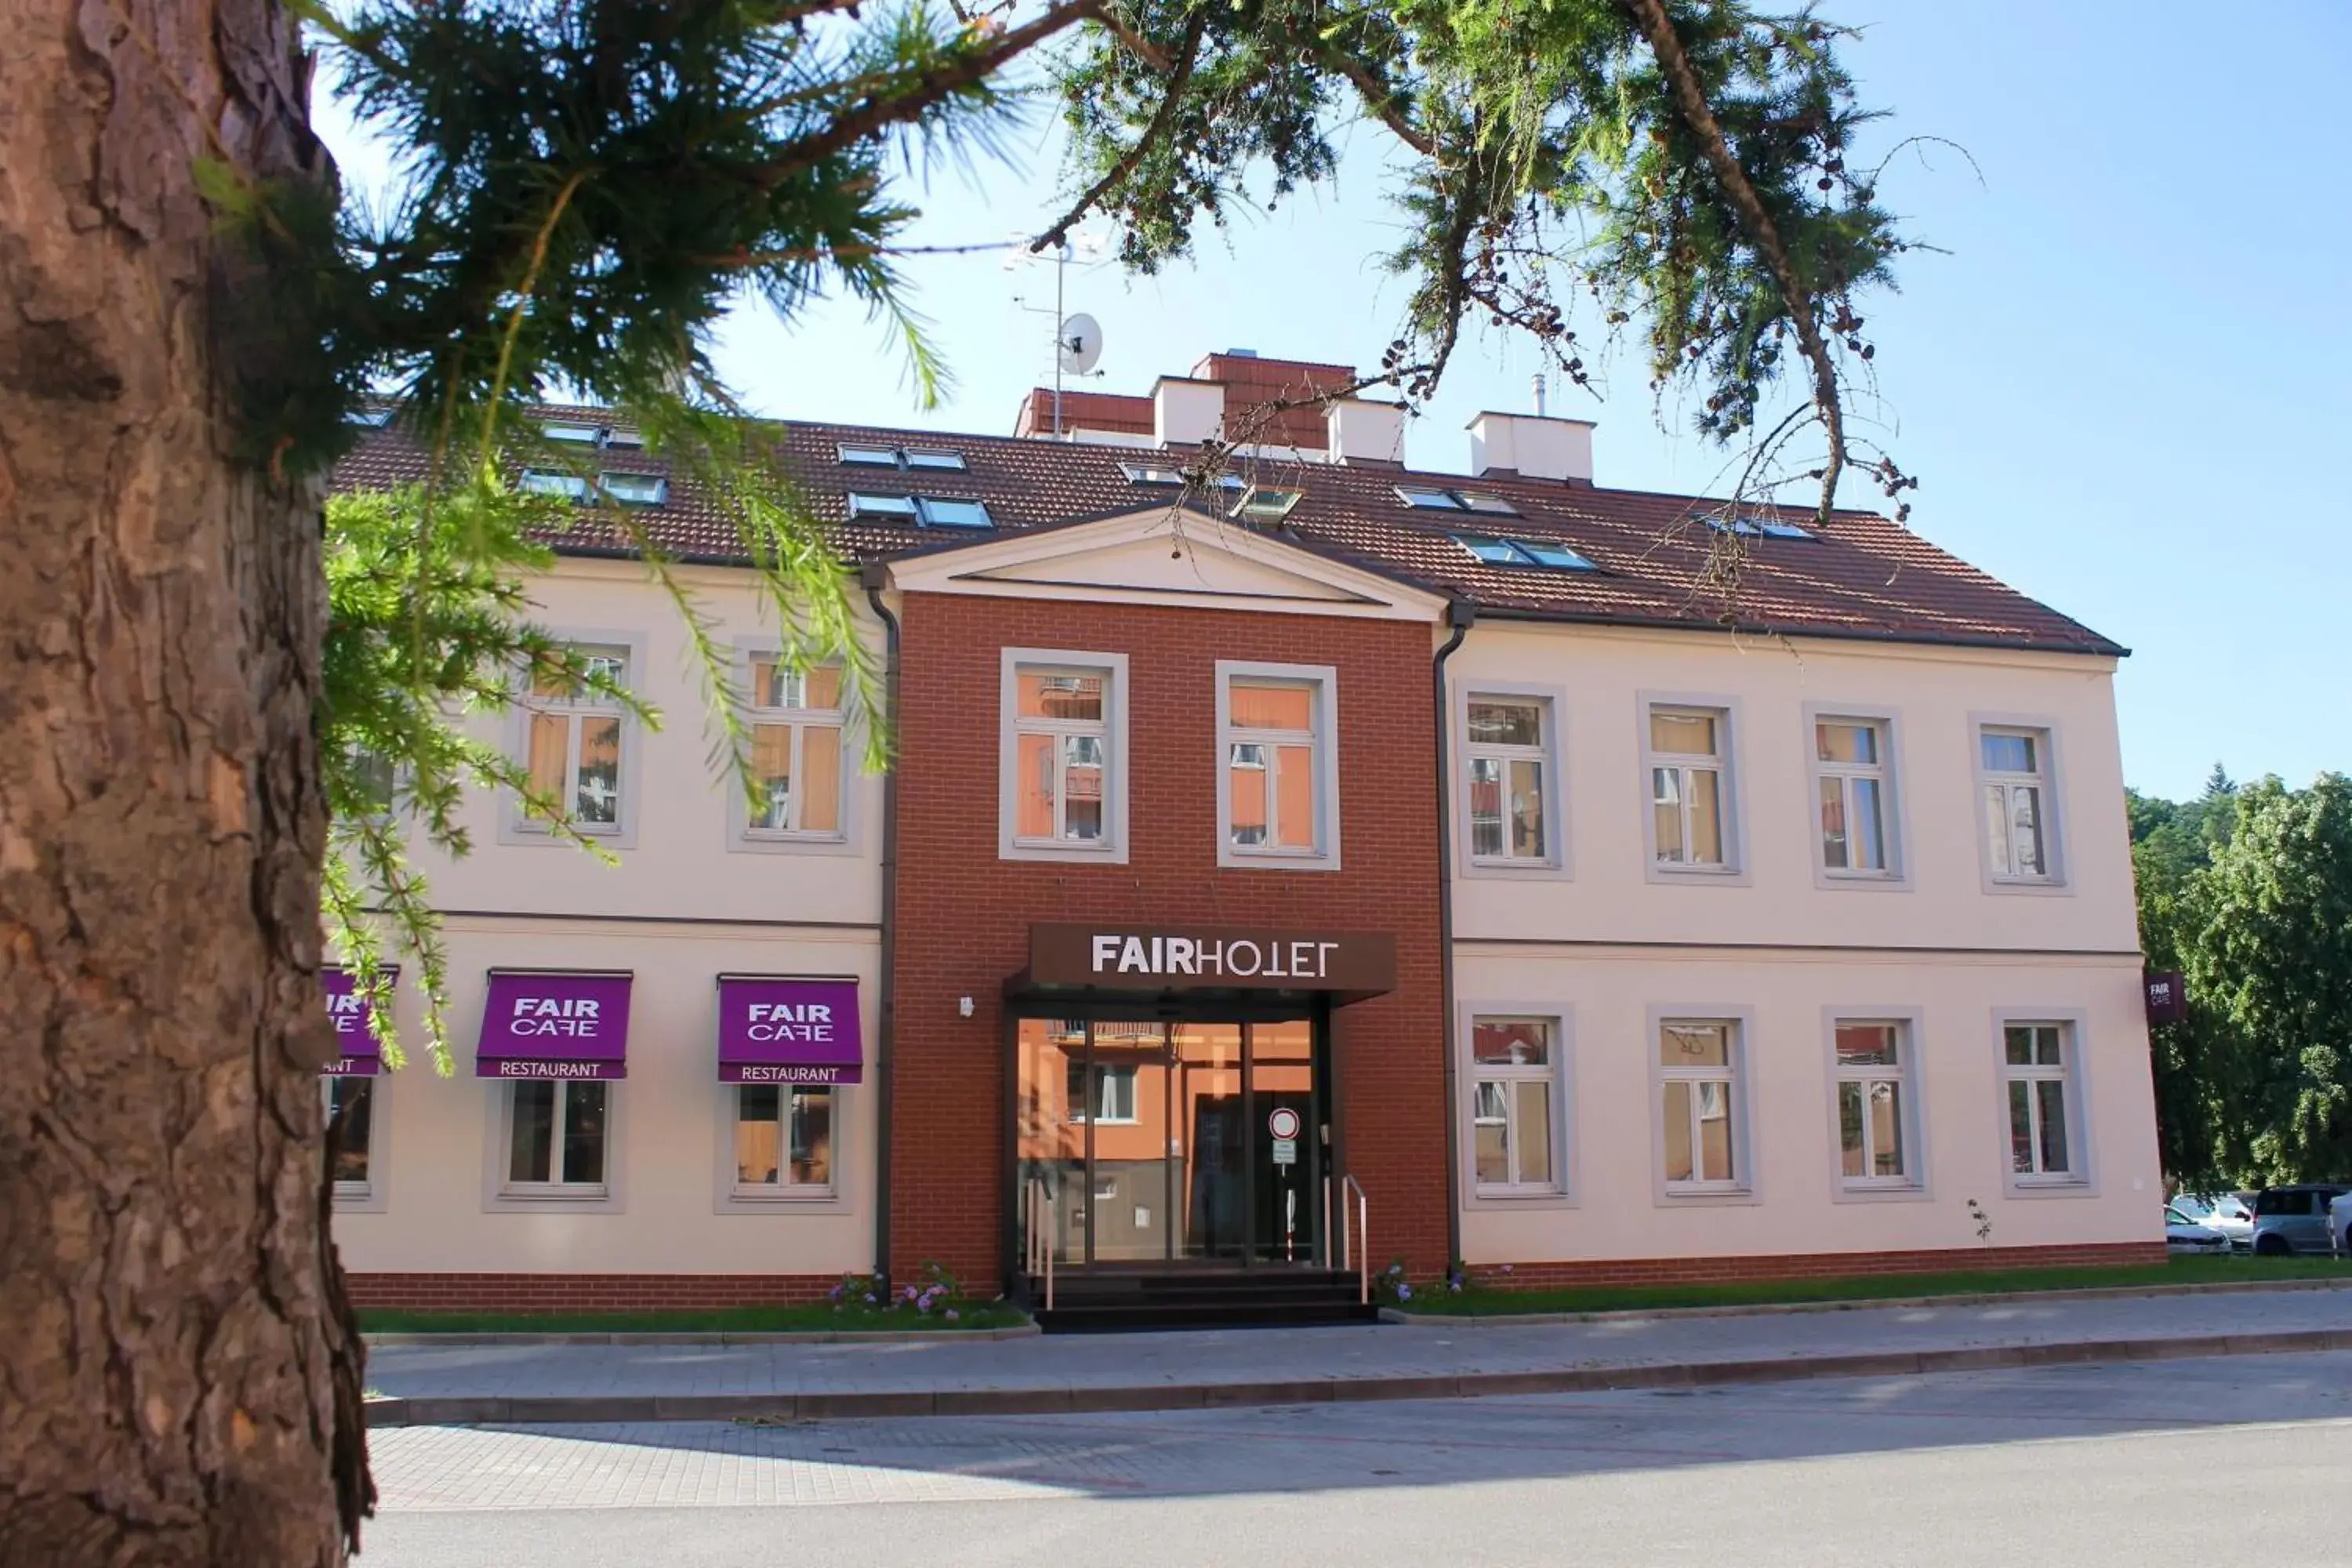 Facade/Entrance in Fairhotel